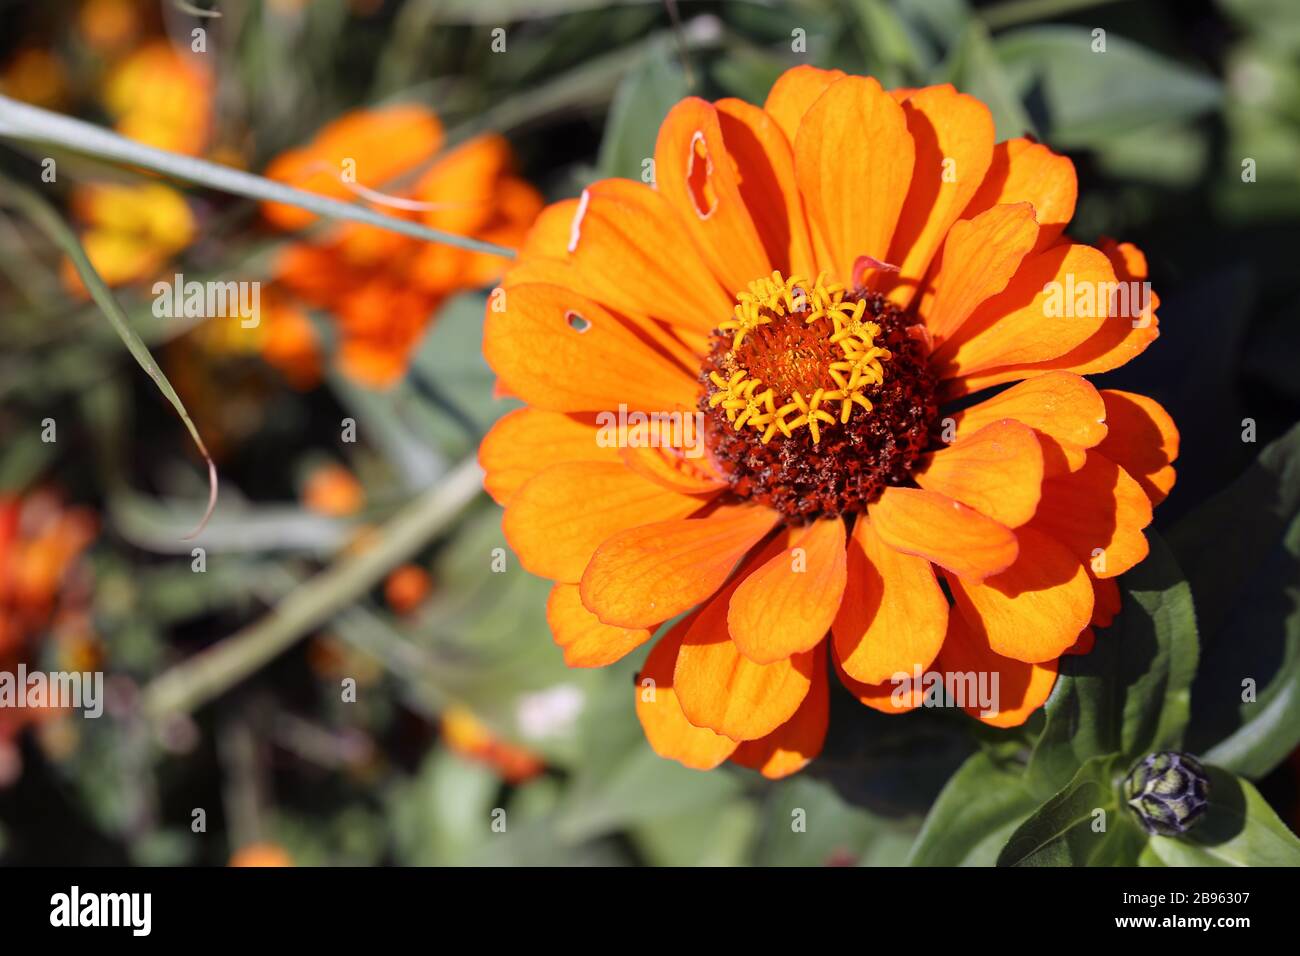 Fiore di color arancio brillante con molte foglie verdi e alcuni fiori gialli più piccoli in un'immagine a colori di primo piano. Vivace e colorato. Foto Stock